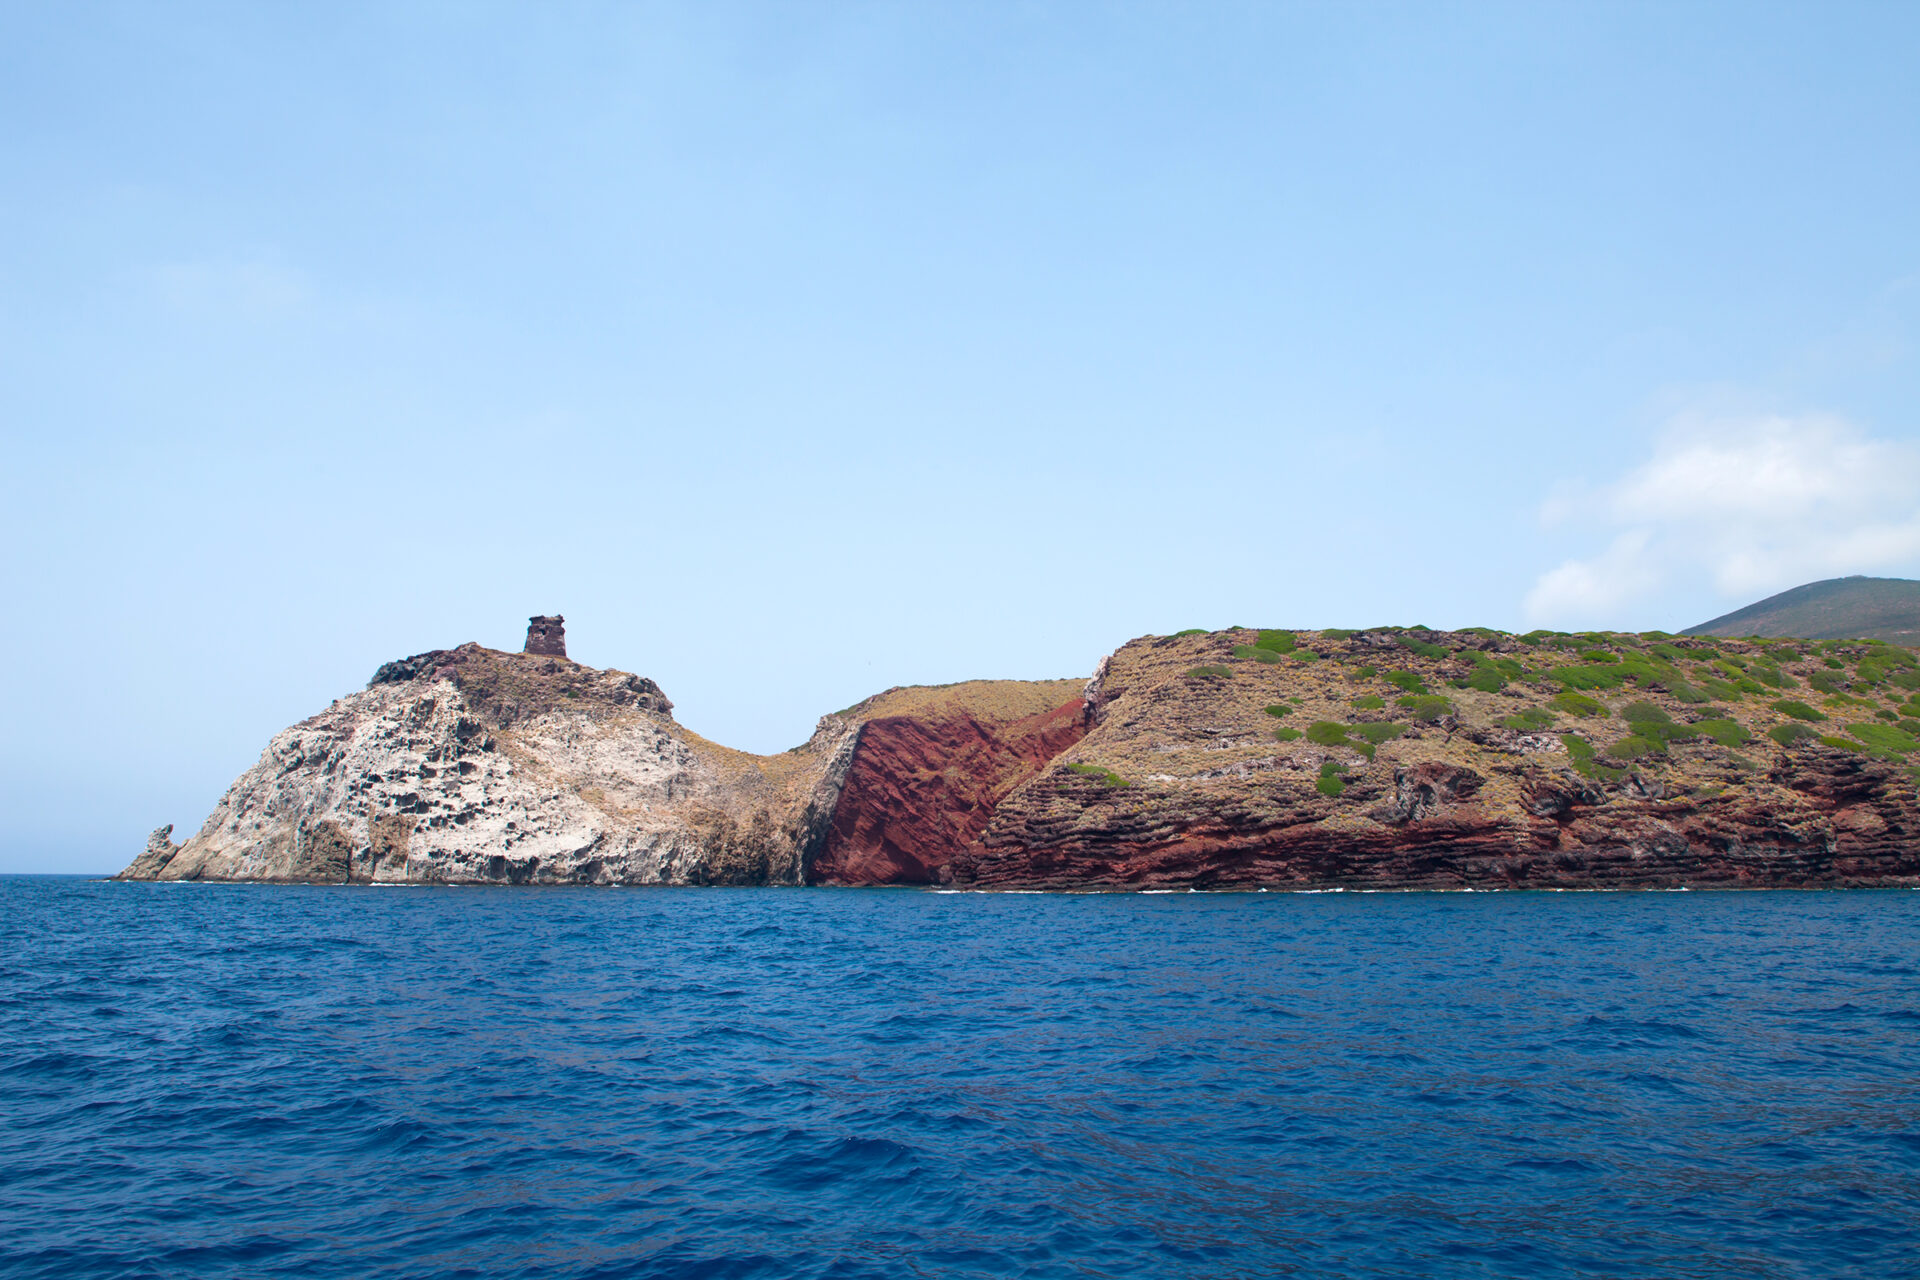 The island of Capraia